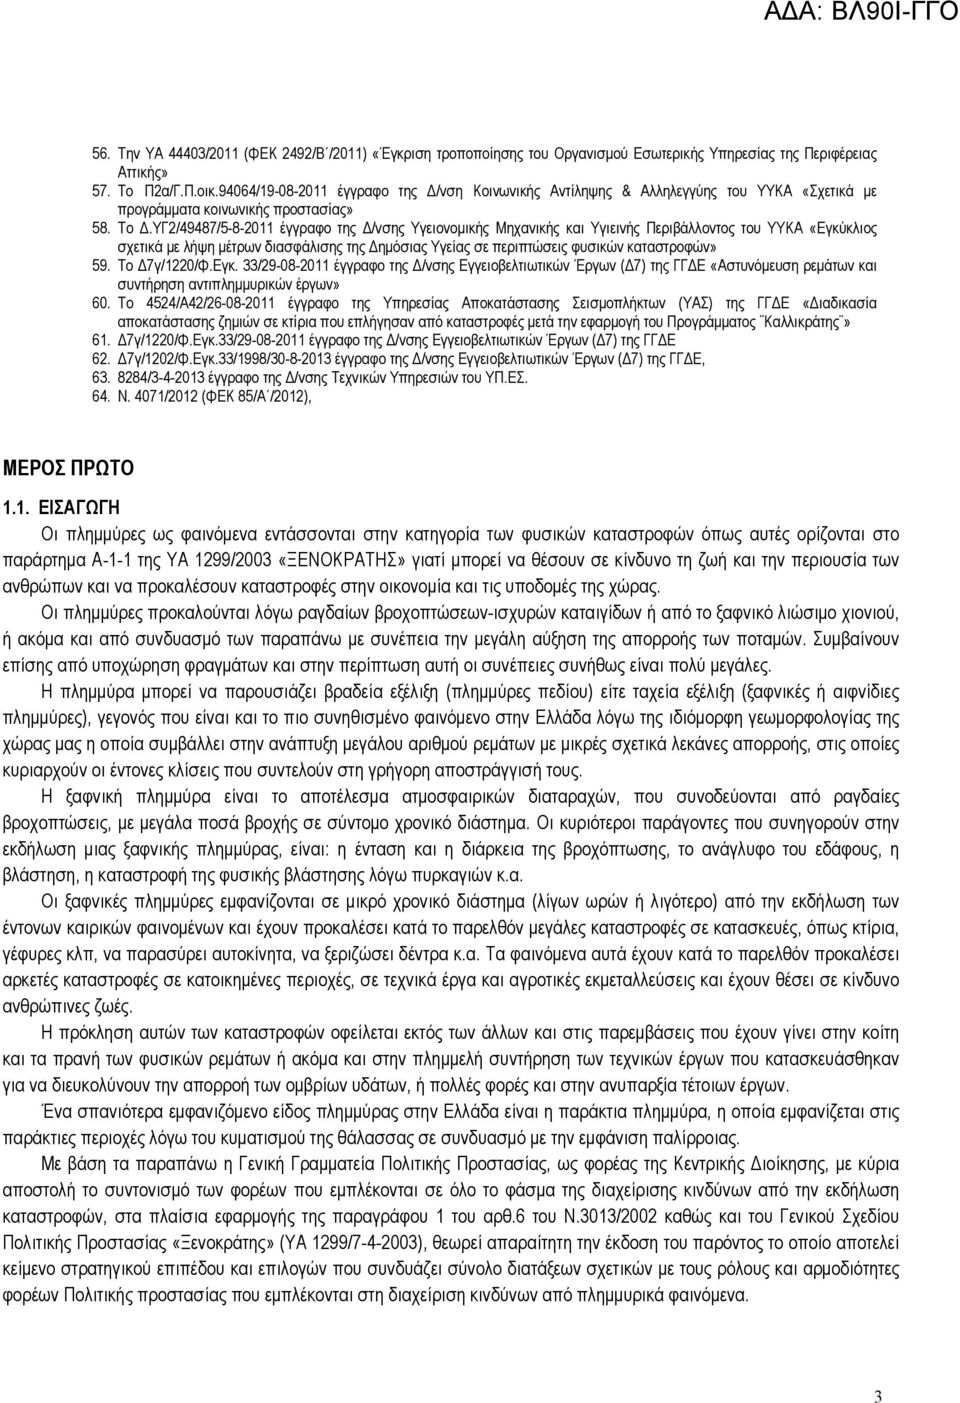 ΥΓ2/49487/5-8-2011 έγγραφο της Δ/νσης Υγειονομικής Μηχανικής και Υγιεινής Περιβάλλοντος του ΥΥΚΑ «Εγκύκλιος σχετικά με λήψη μέτρων διασφάλισης της Δημόσιας Υγείας σε περιπτώσεις φυσικών καταστροφών»